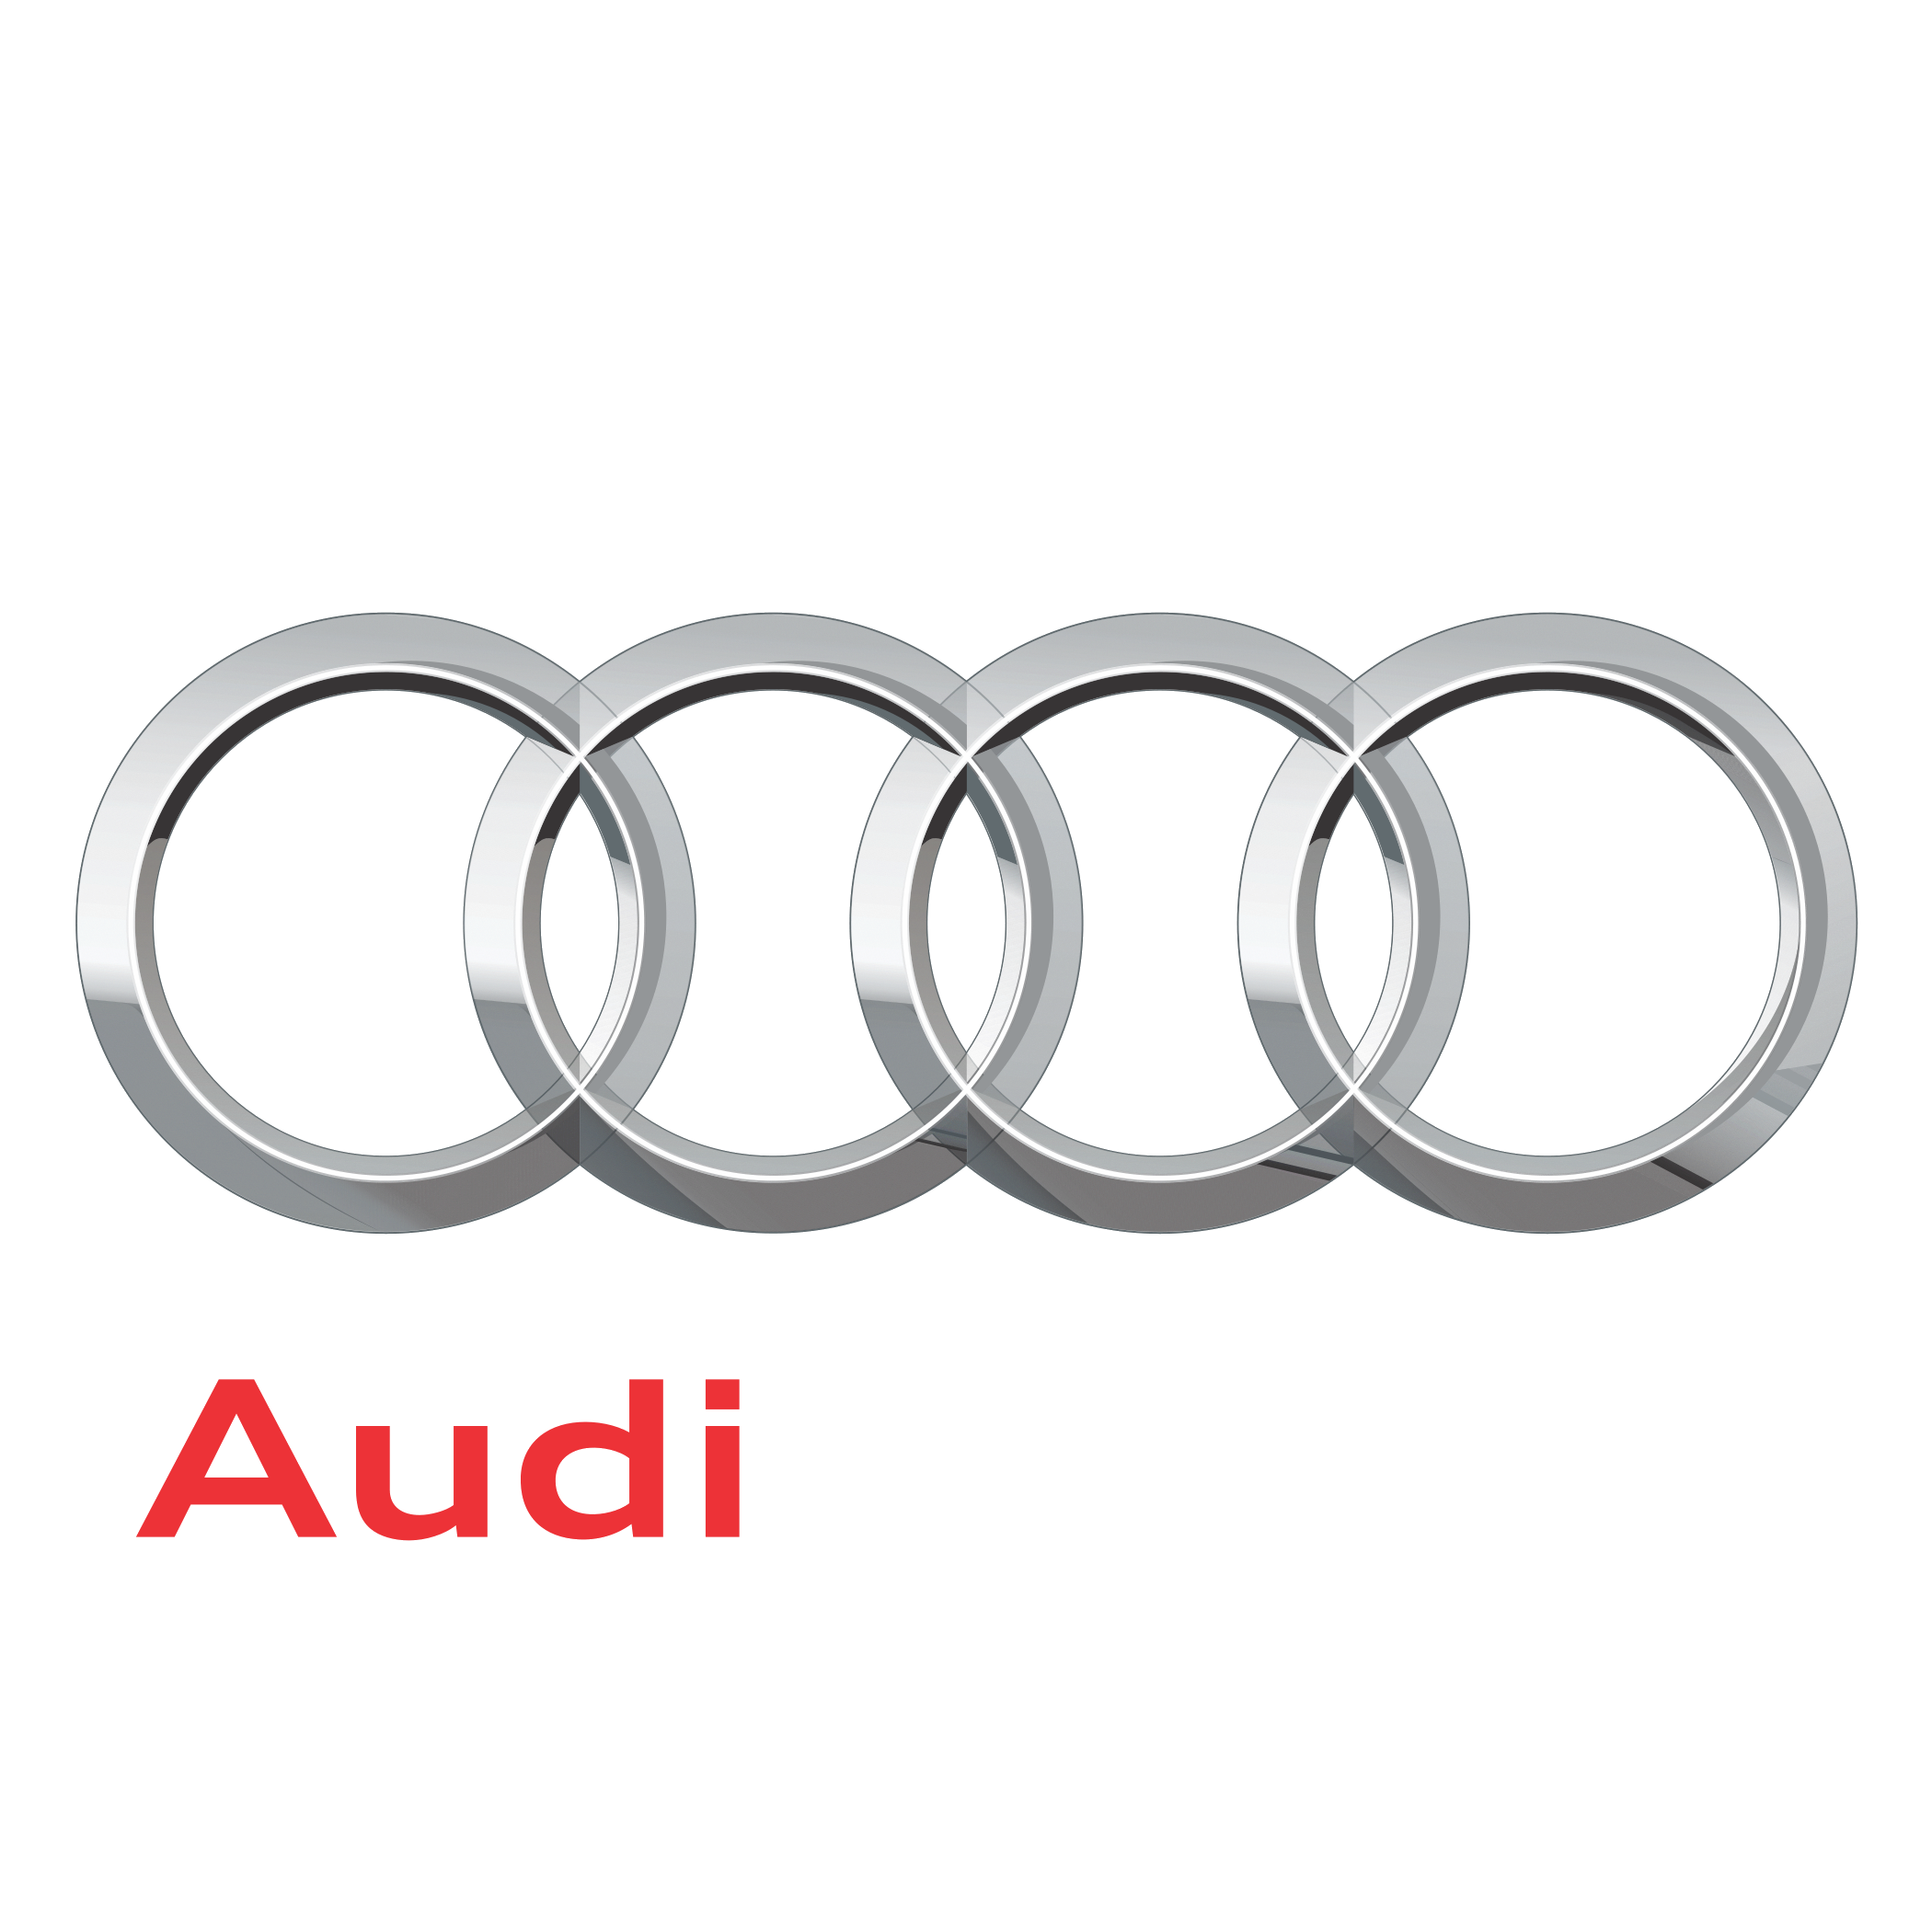 Audi Türkiye’den ‘Güzel Hareketler’